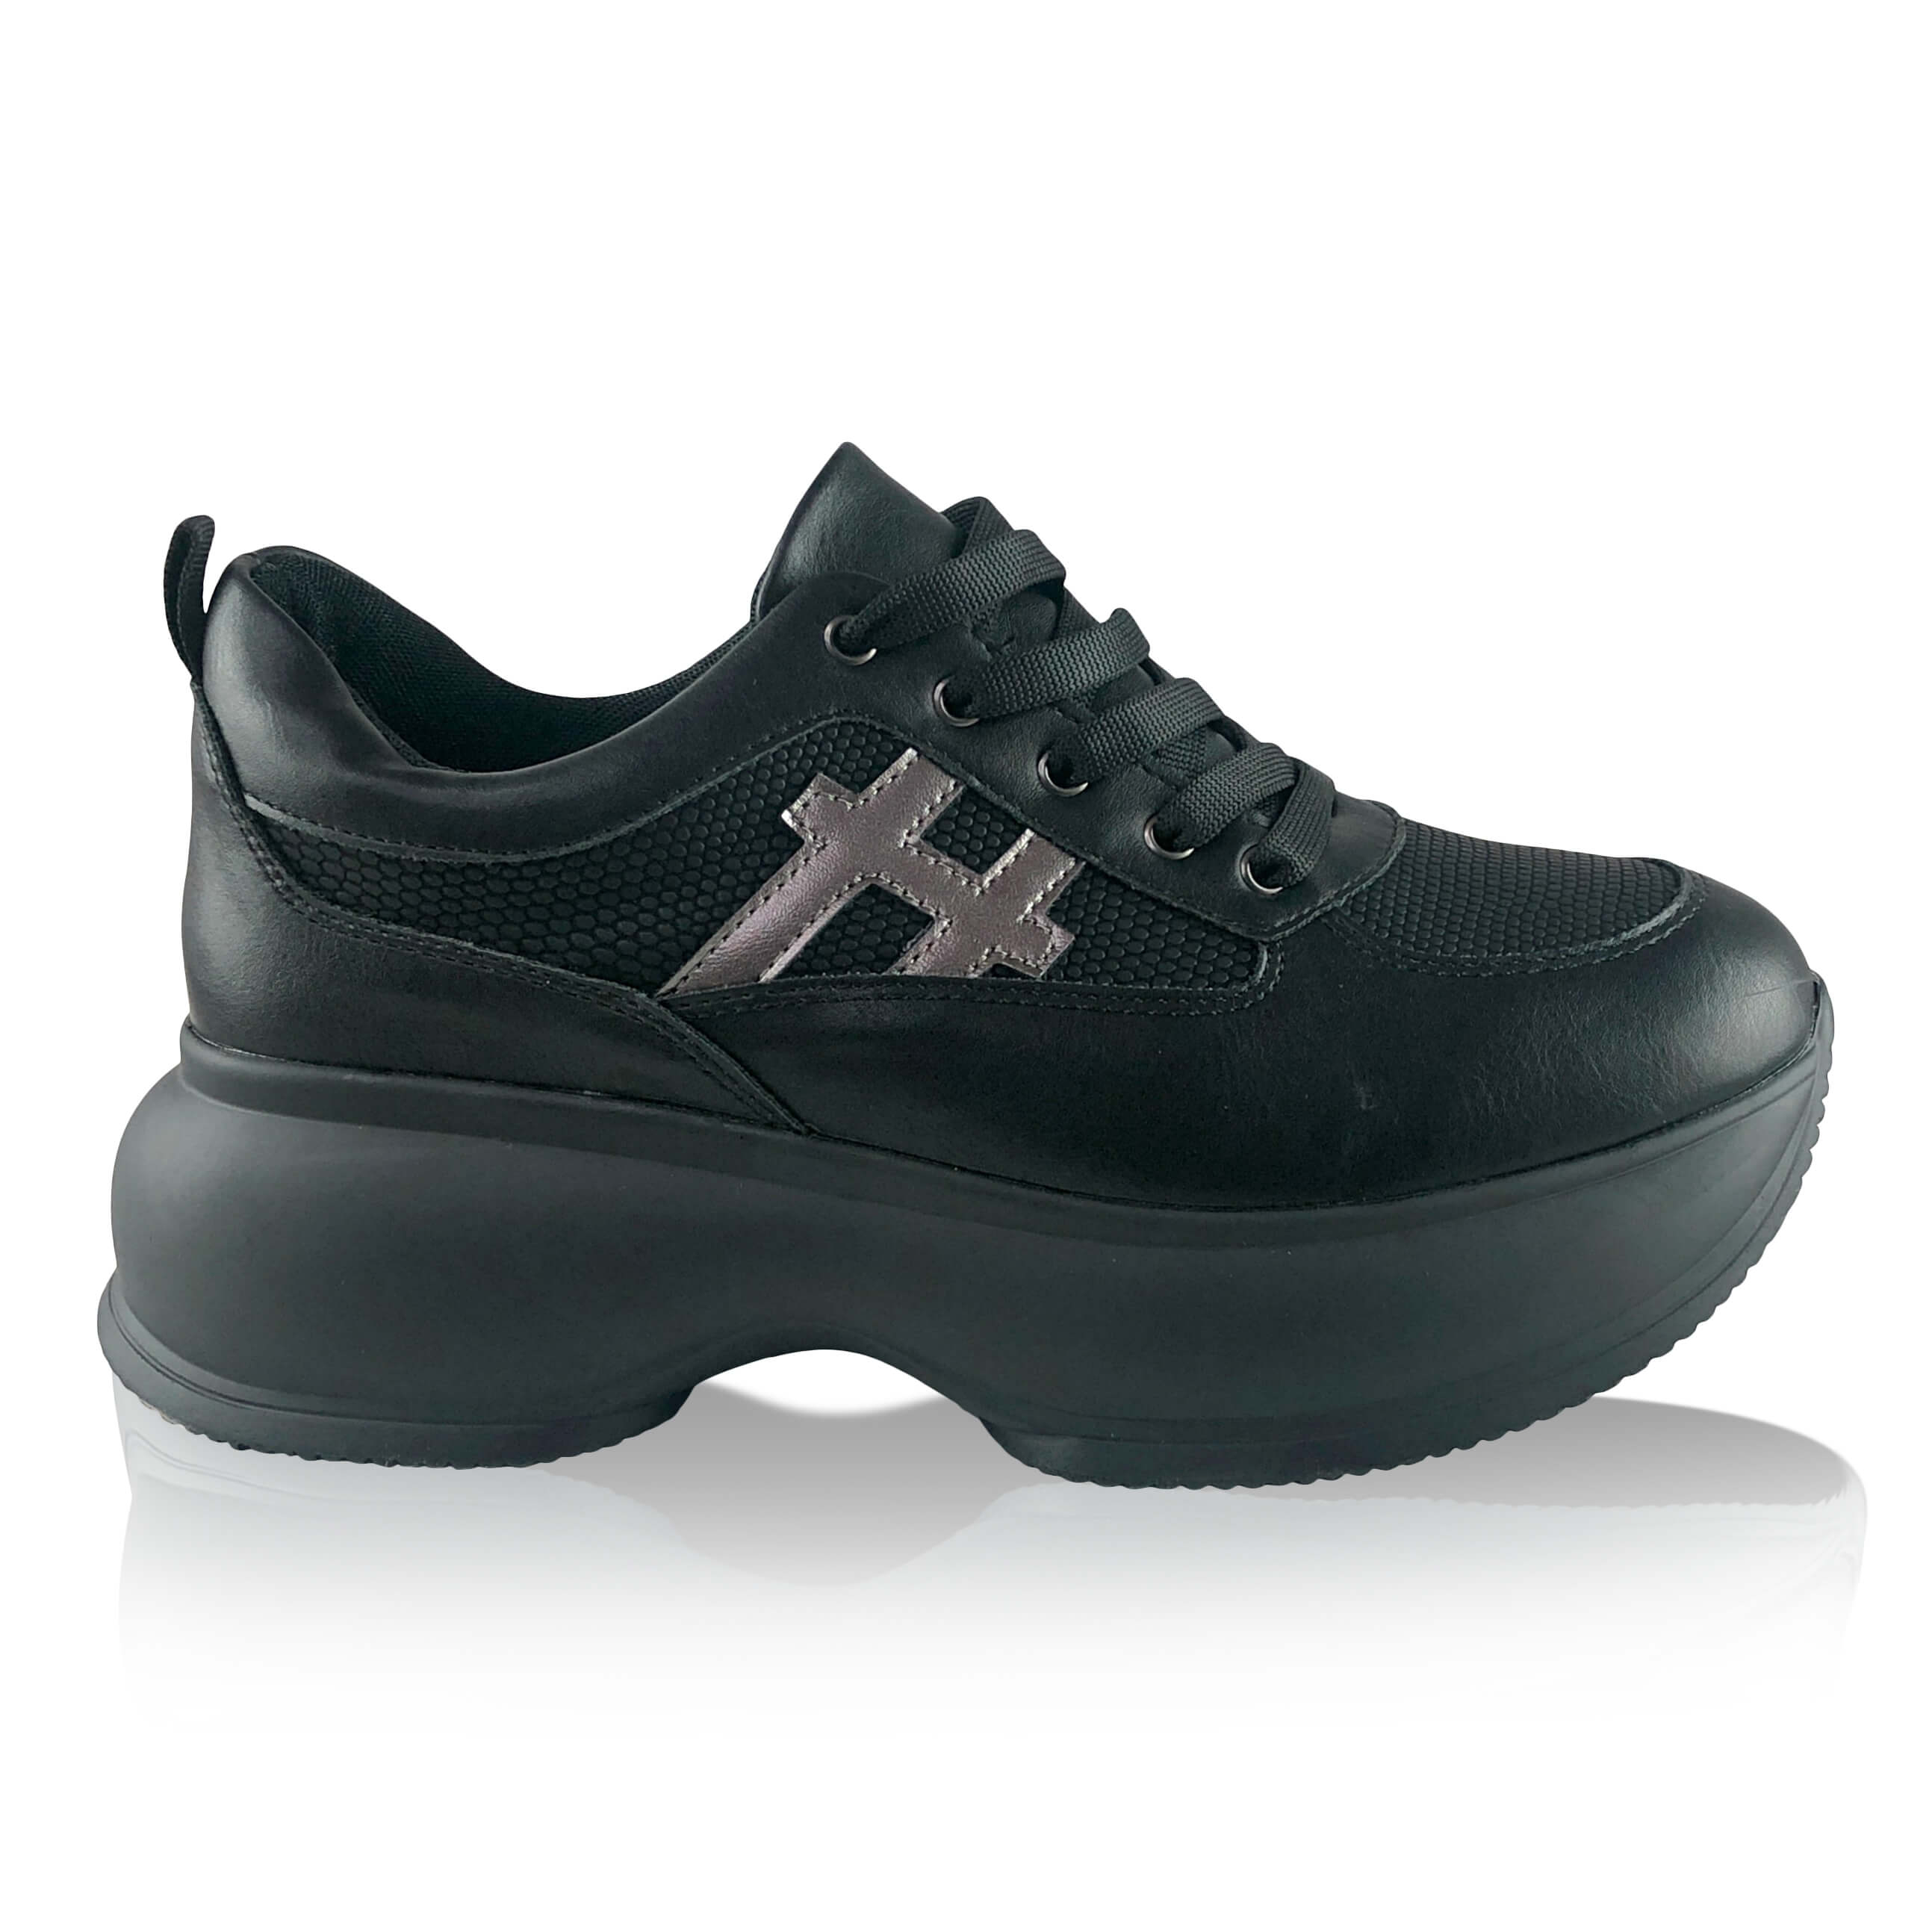 Μαύρα Δίπατα Sneakers σε Συνδυασμό Υλικών ΠΑΠΟΥΤΣΙΑ/SNEAKERS/